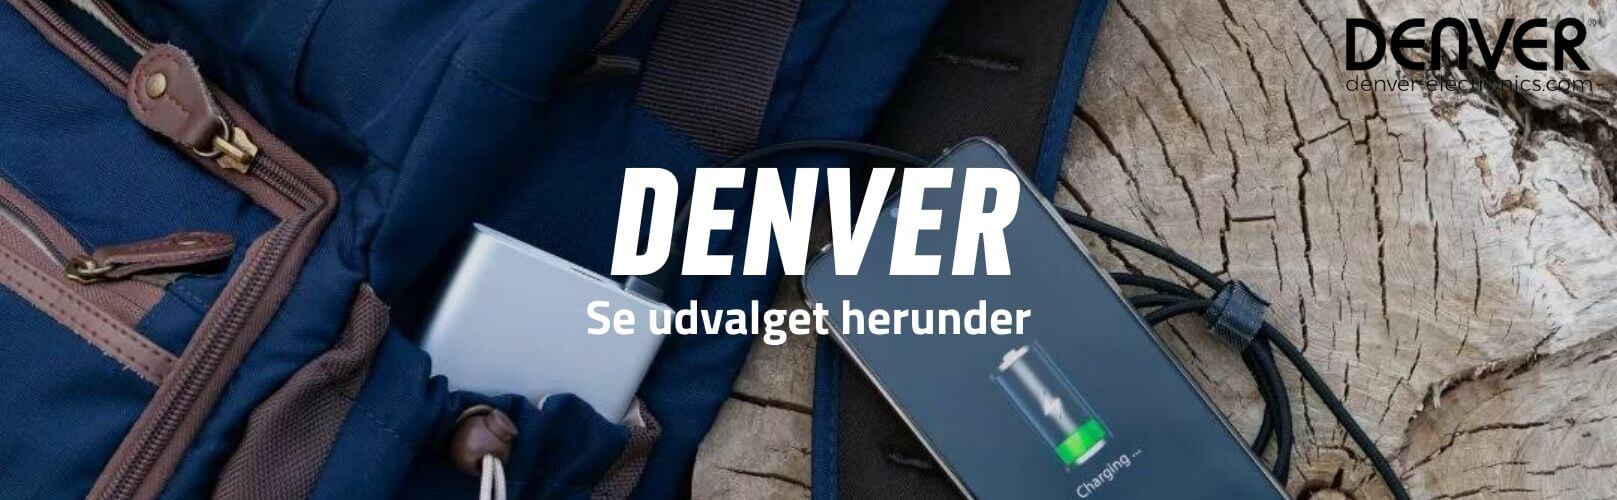 Denver brand banner